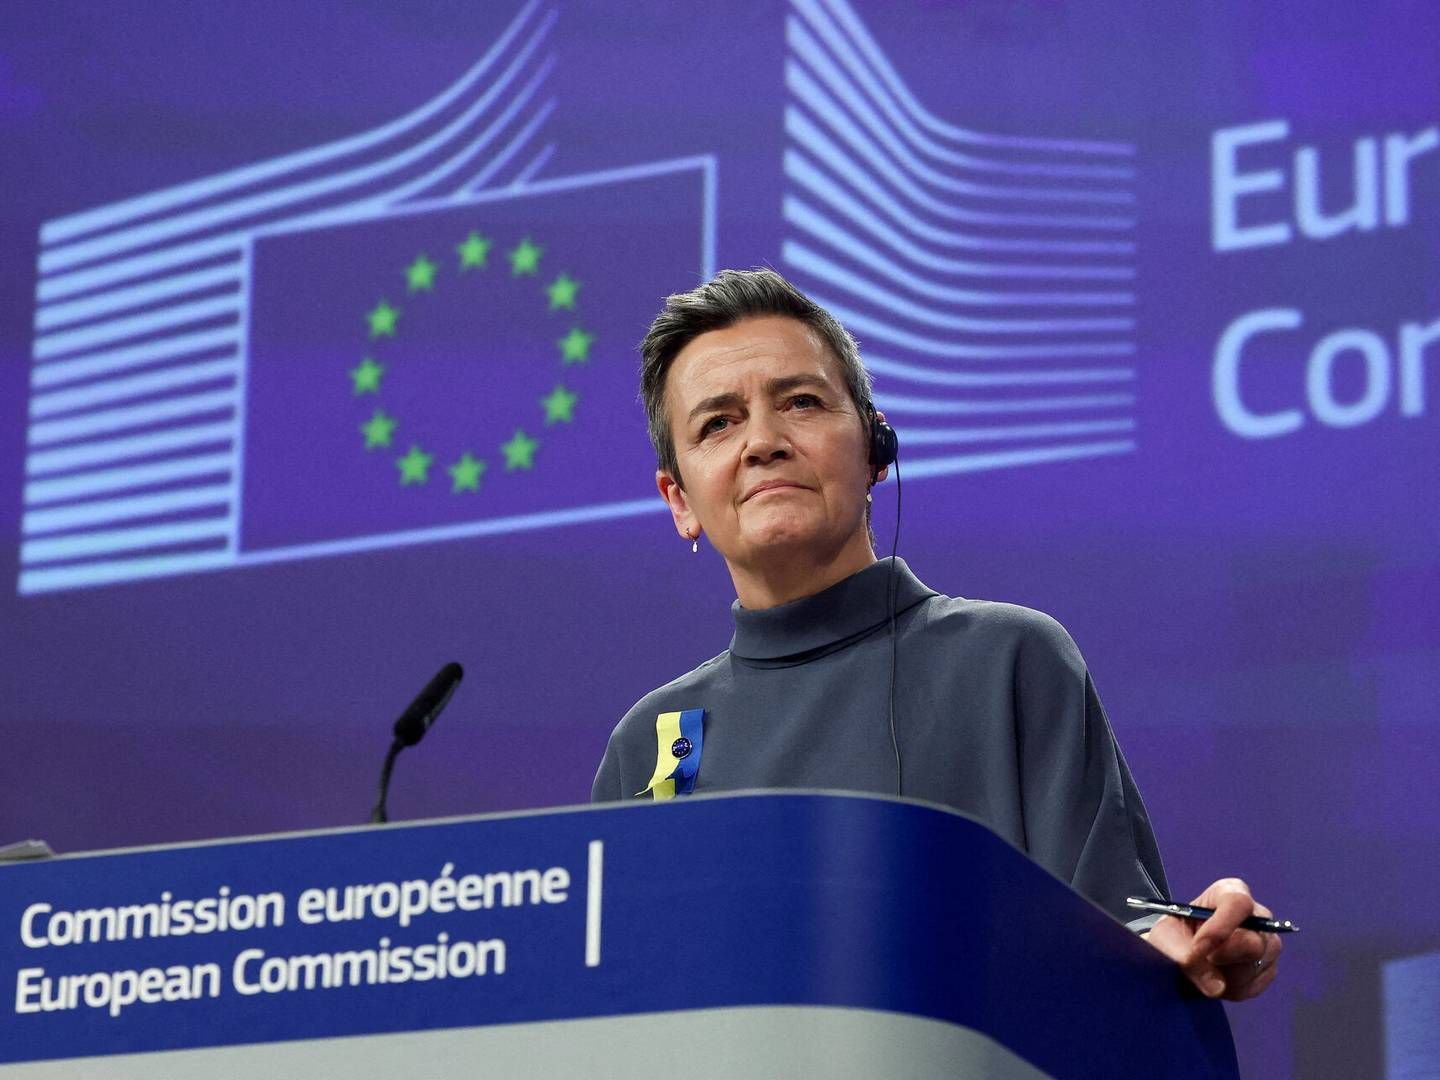 "Vi er kommet meget tættere på forretningsmodellen hos de virksomheder, som især er i søgelyset,” siger Margrethe Vestager om ny EU-lov. | Foto: Yves Herman/Reuters/Ritzau Scanpix